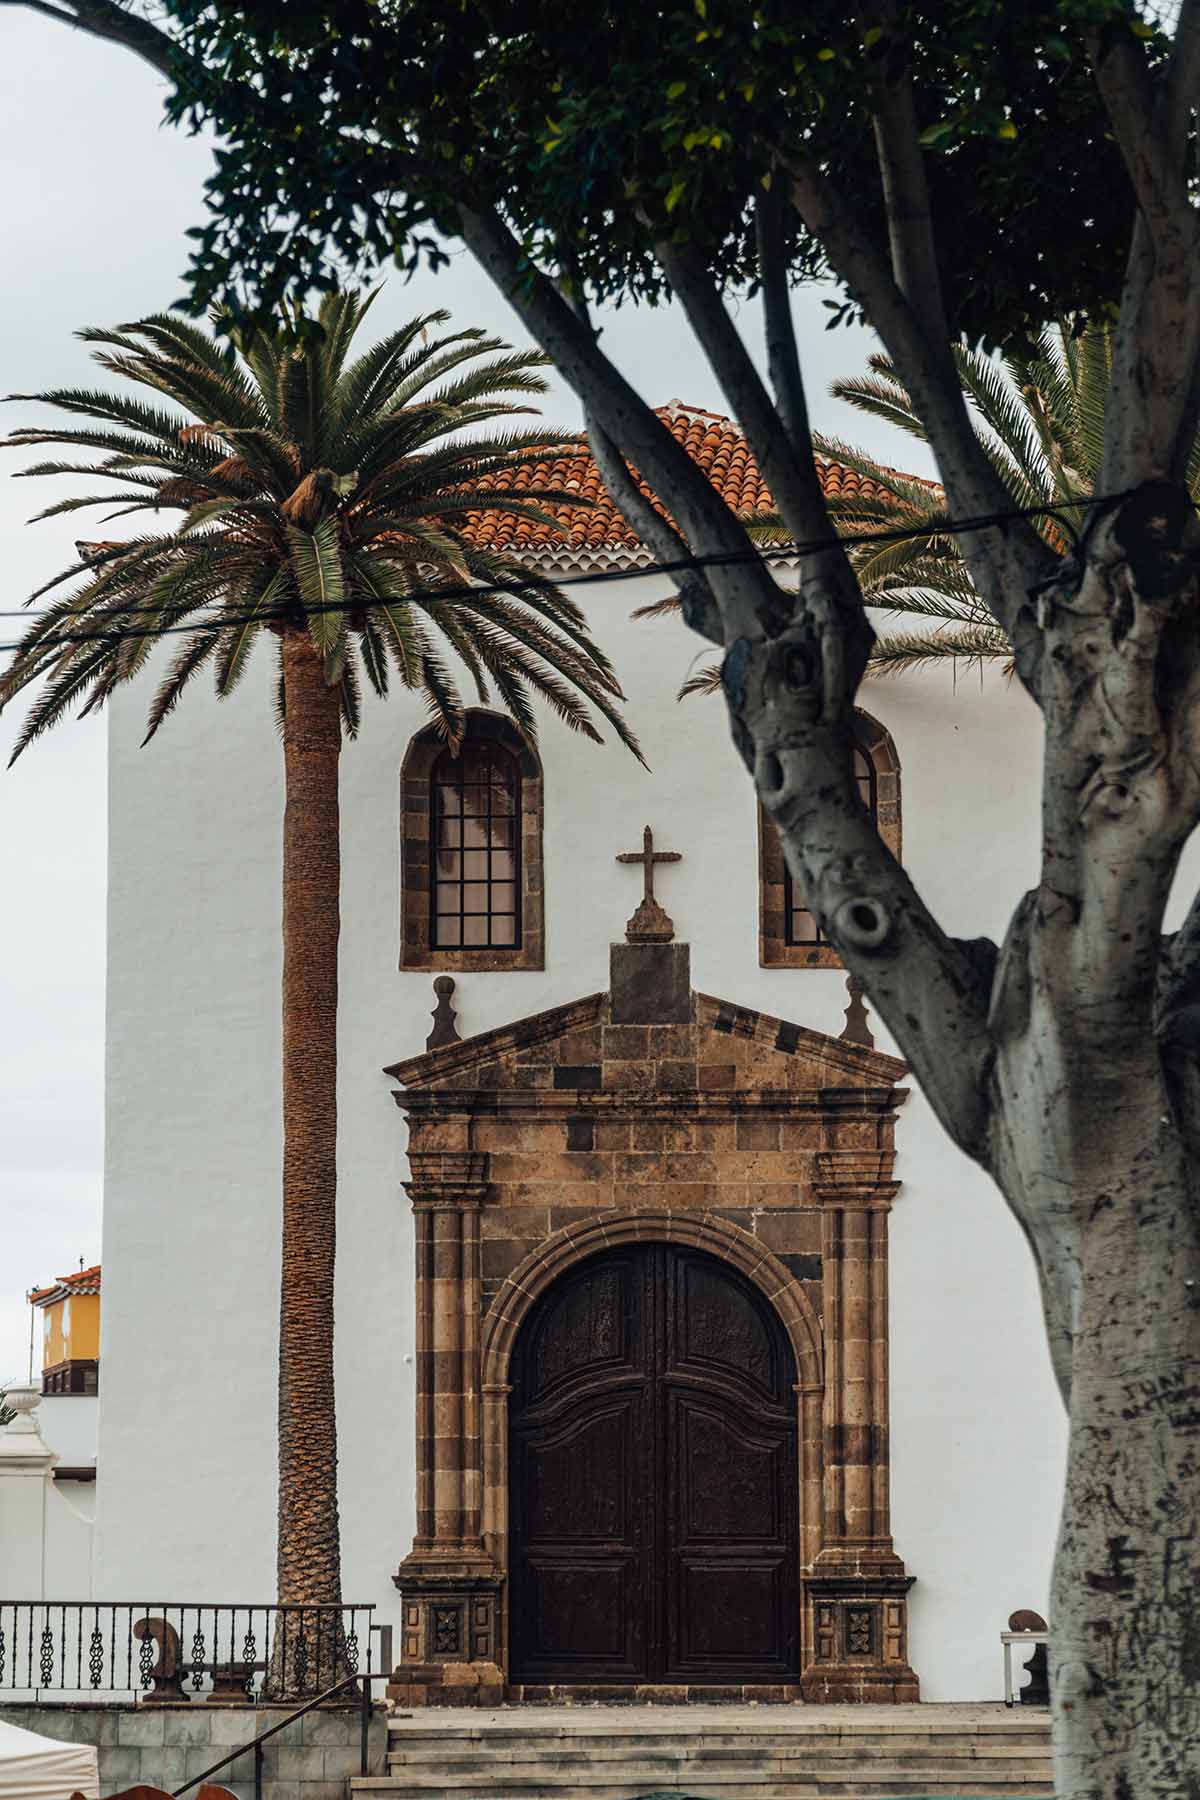 Convento de San Francisco, Garachico, Tenerife